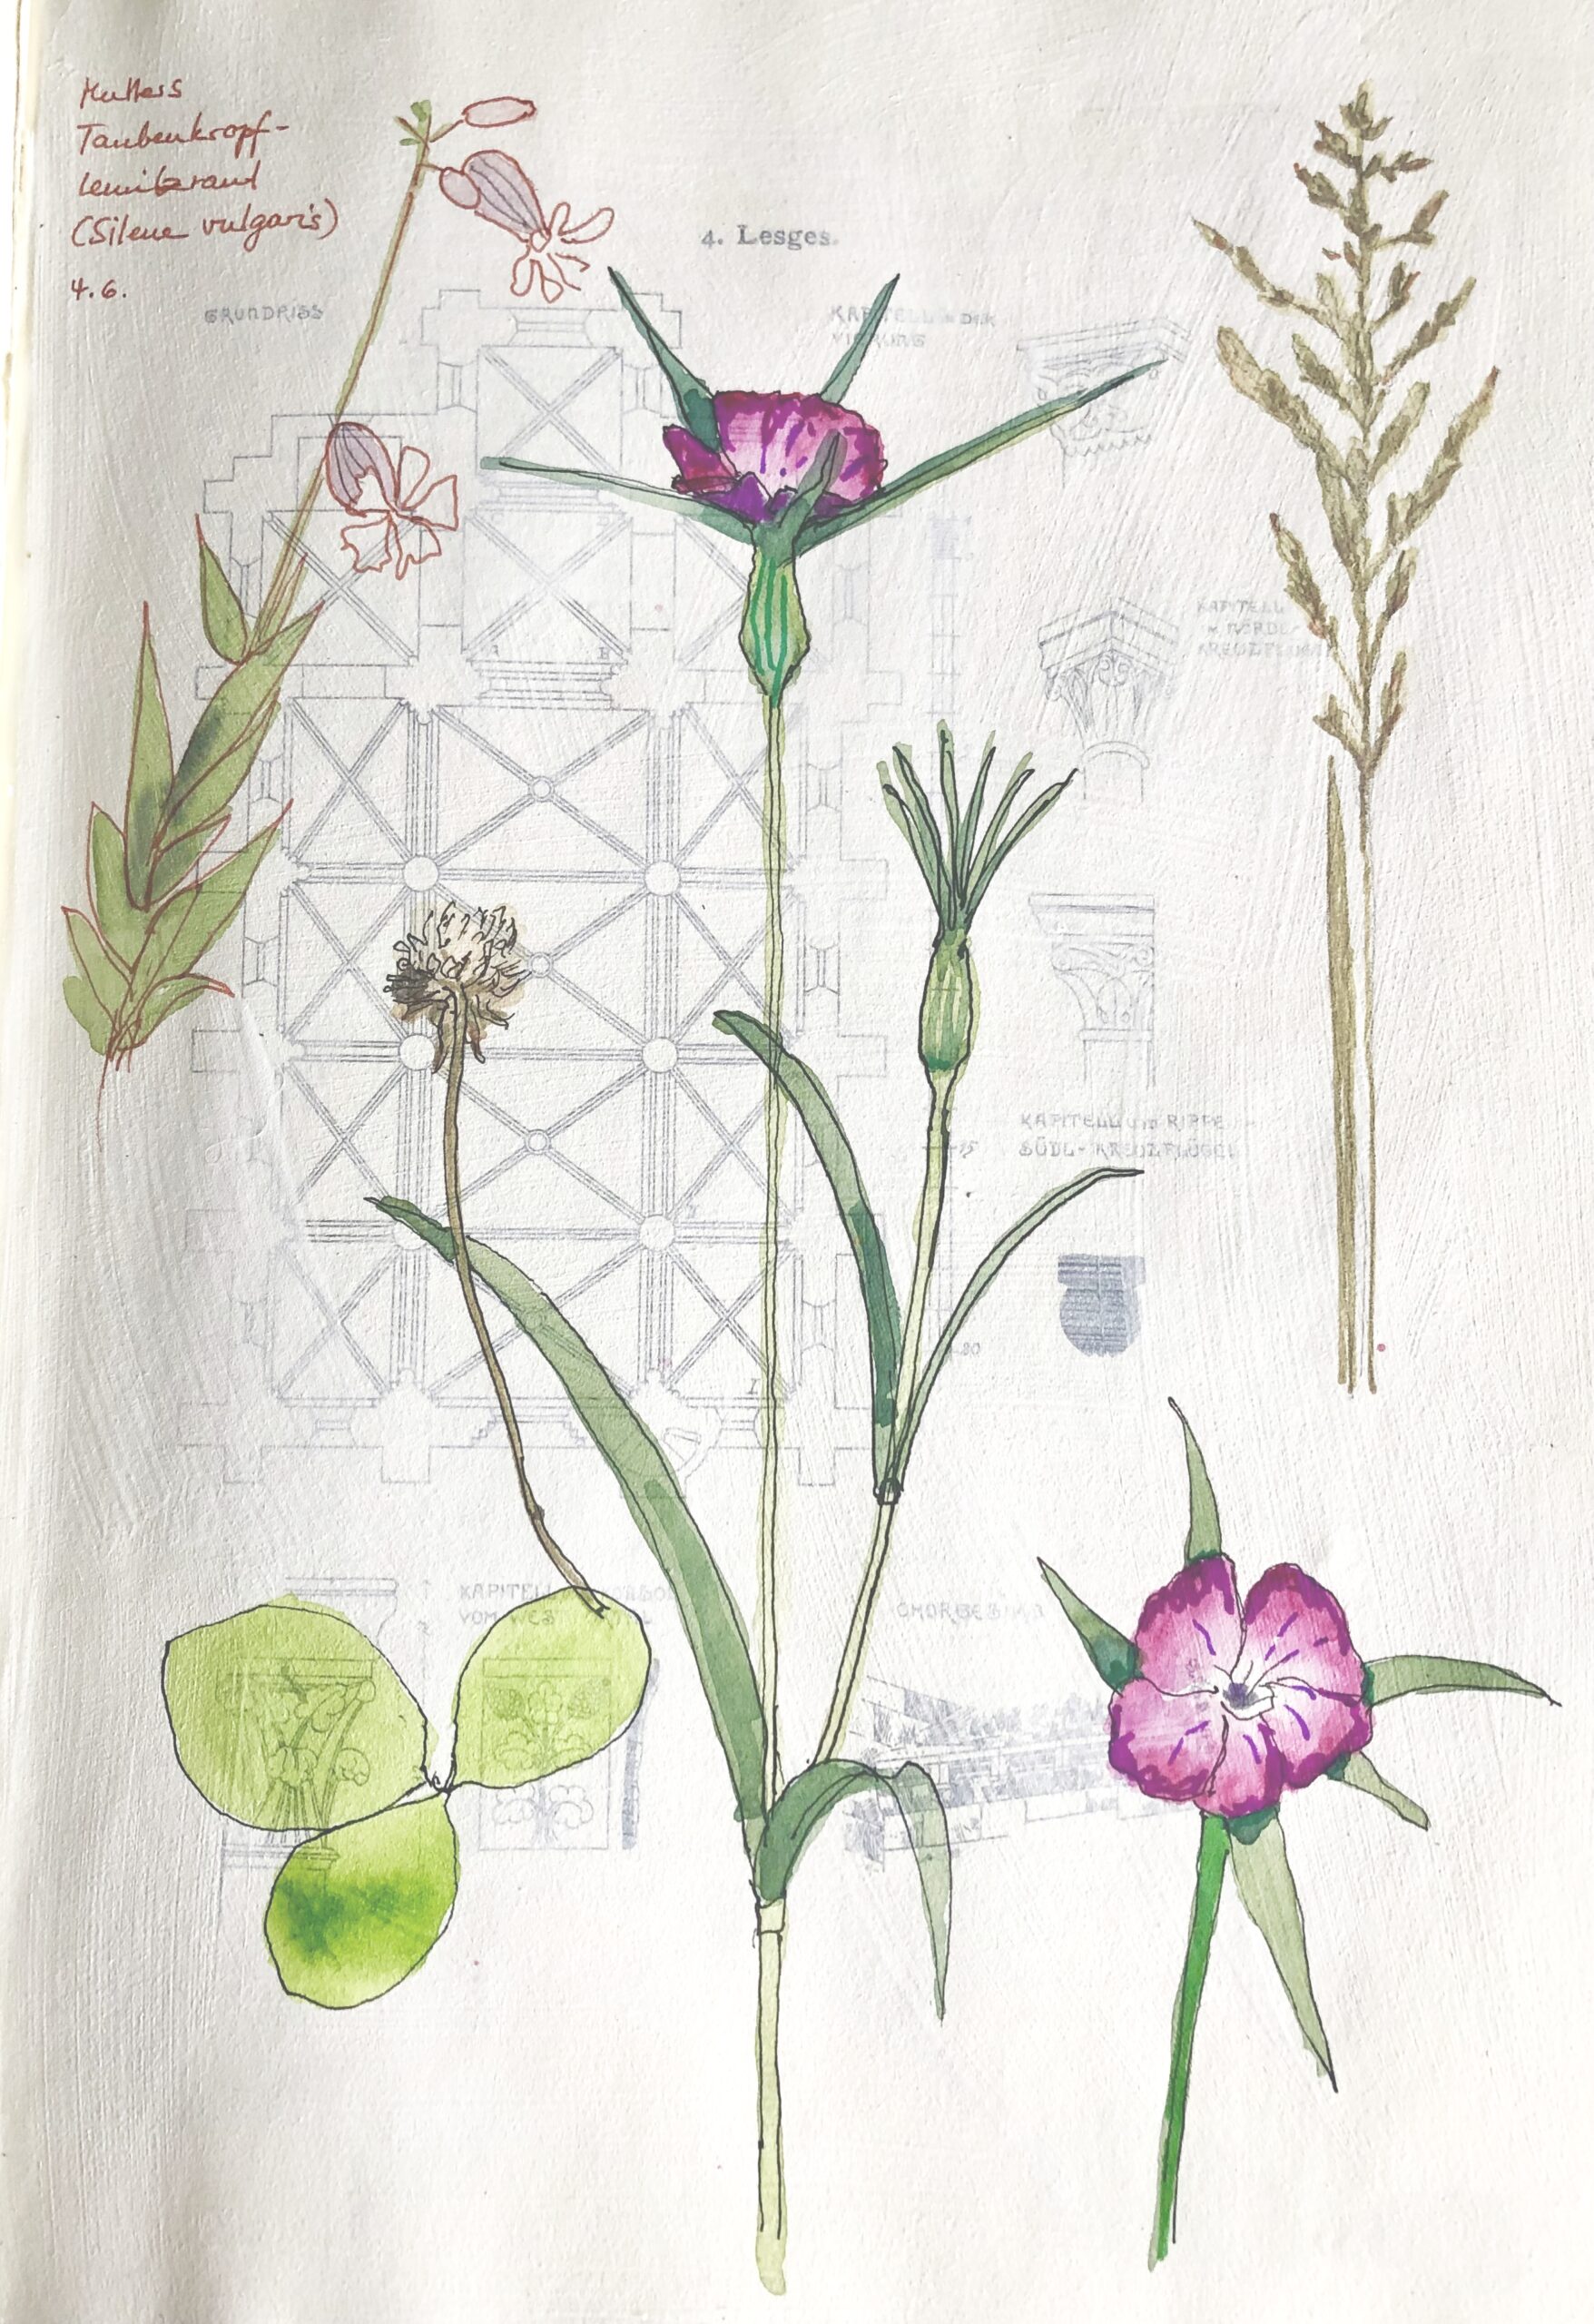 Seite aus dem Naturtagebuch; Wildblumen und Gräser